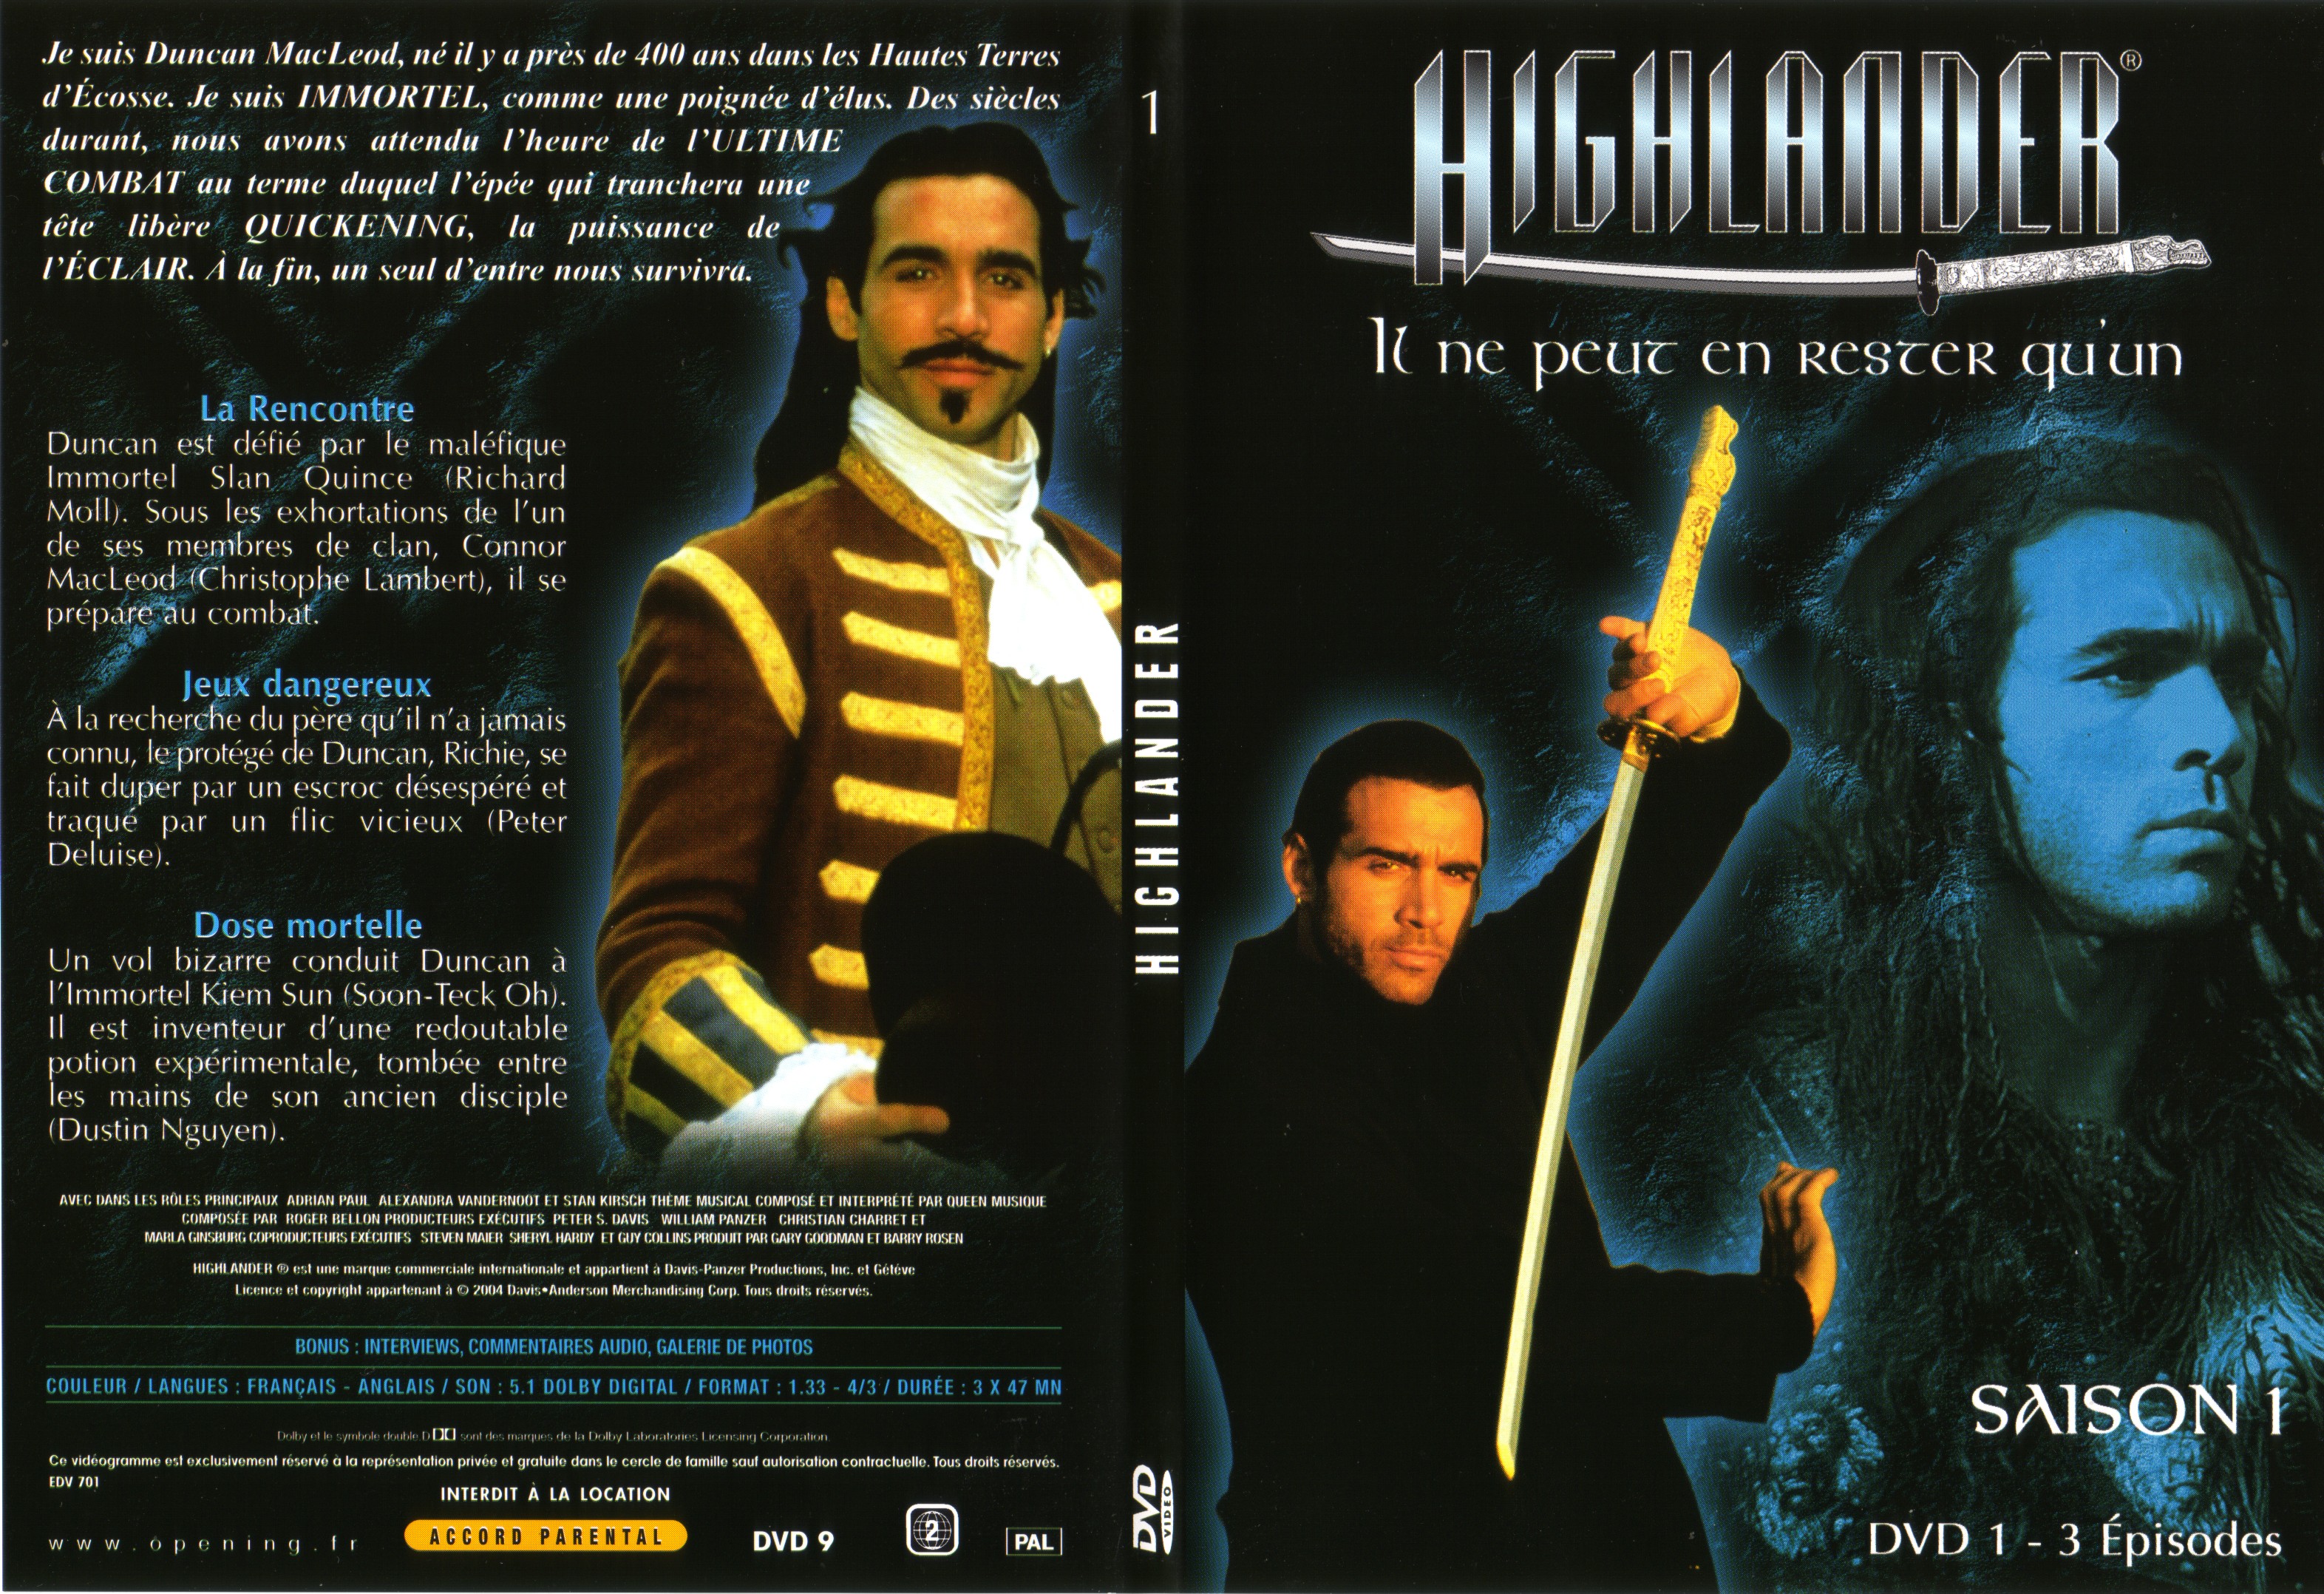 Jaquette DVD Highlander saison 1 DVD 1